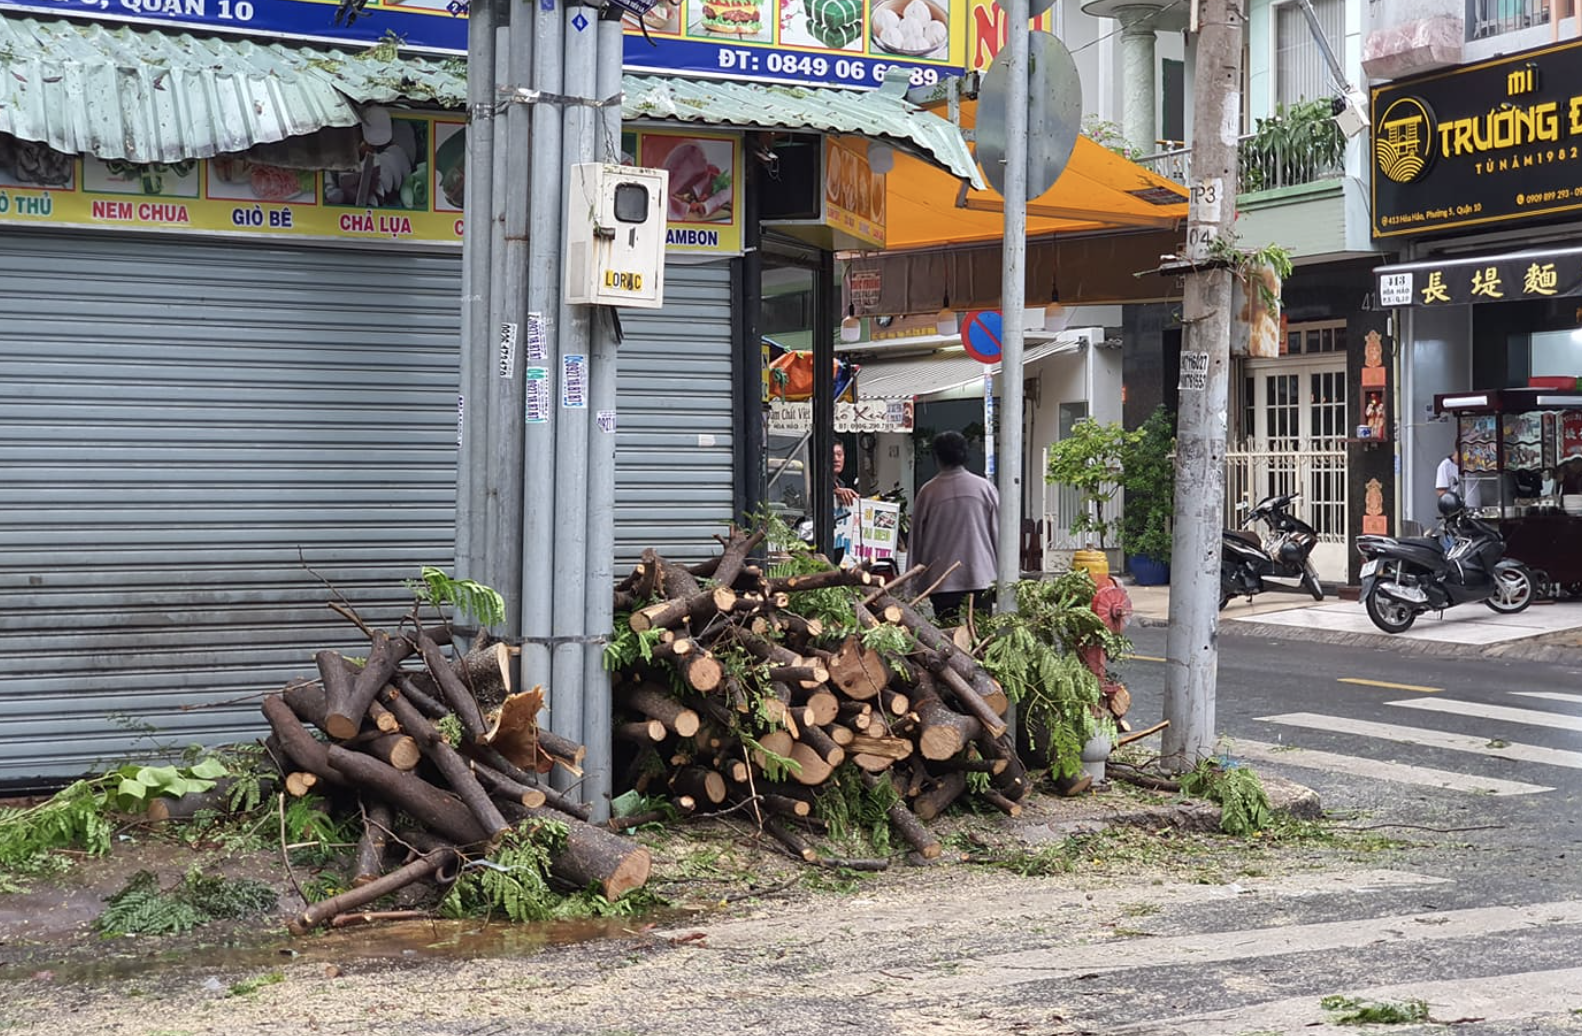 Mưa lớn kèm gió mạnh khiến nhiều cây phượng lại bật gốc, 3 nữ sinh ở Đồng Nai bị đè xay xát người - Ảnh 1.